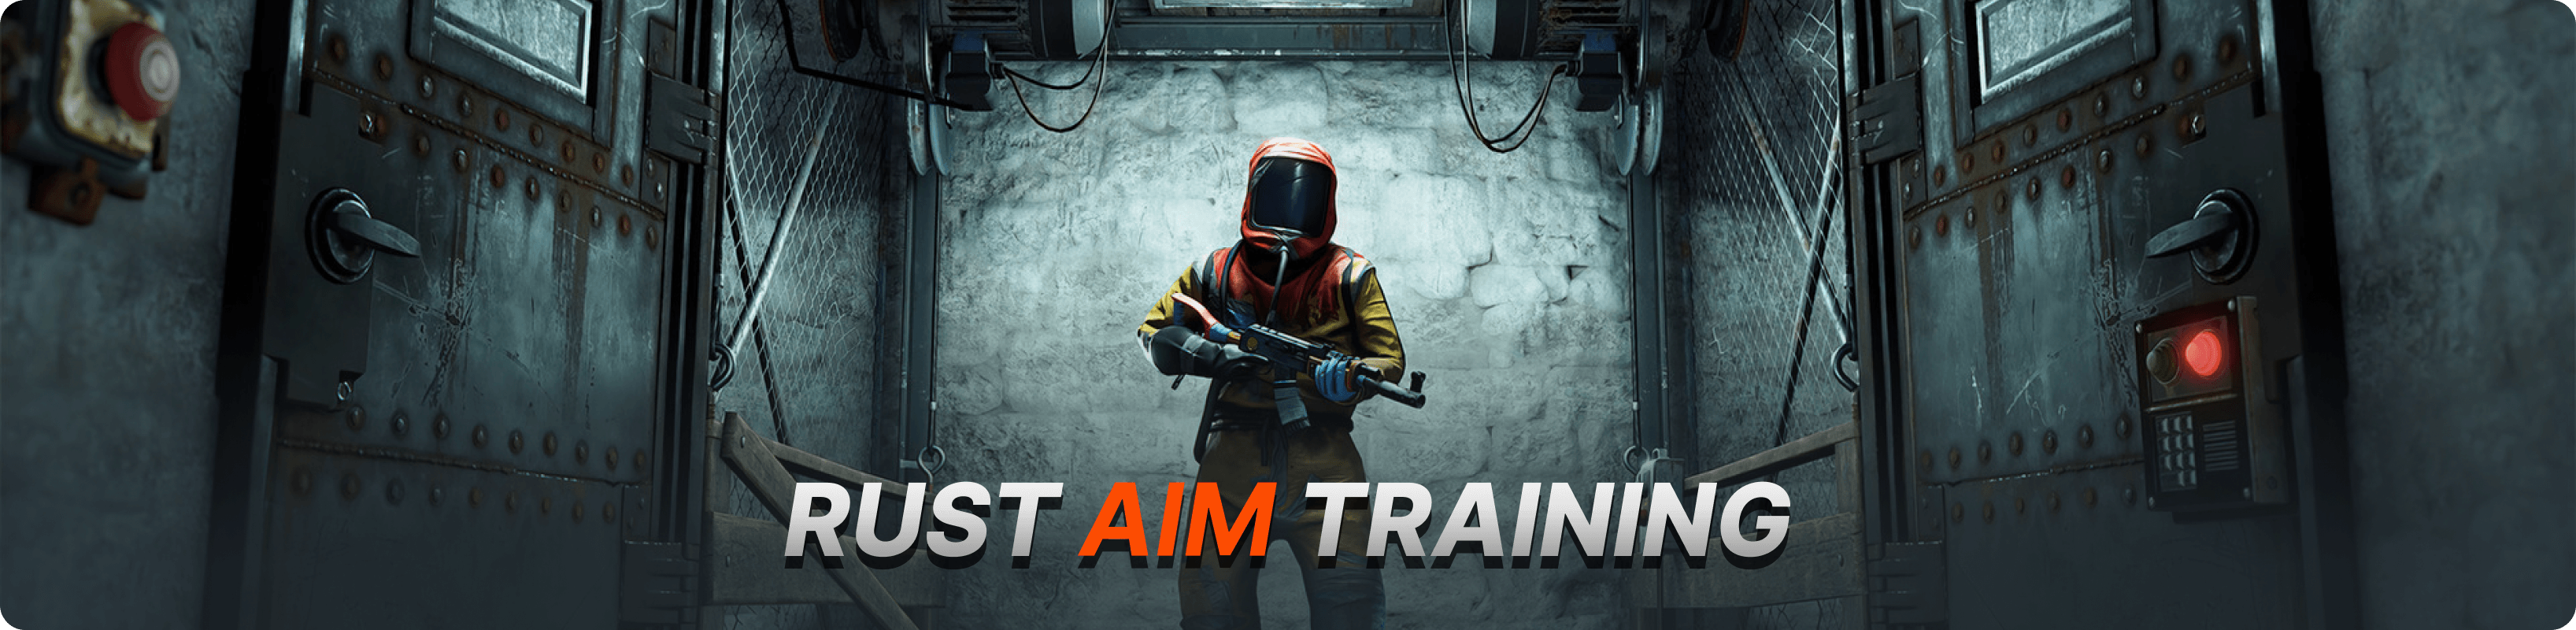 Aim Trainer, Best FPS Aim Training Game